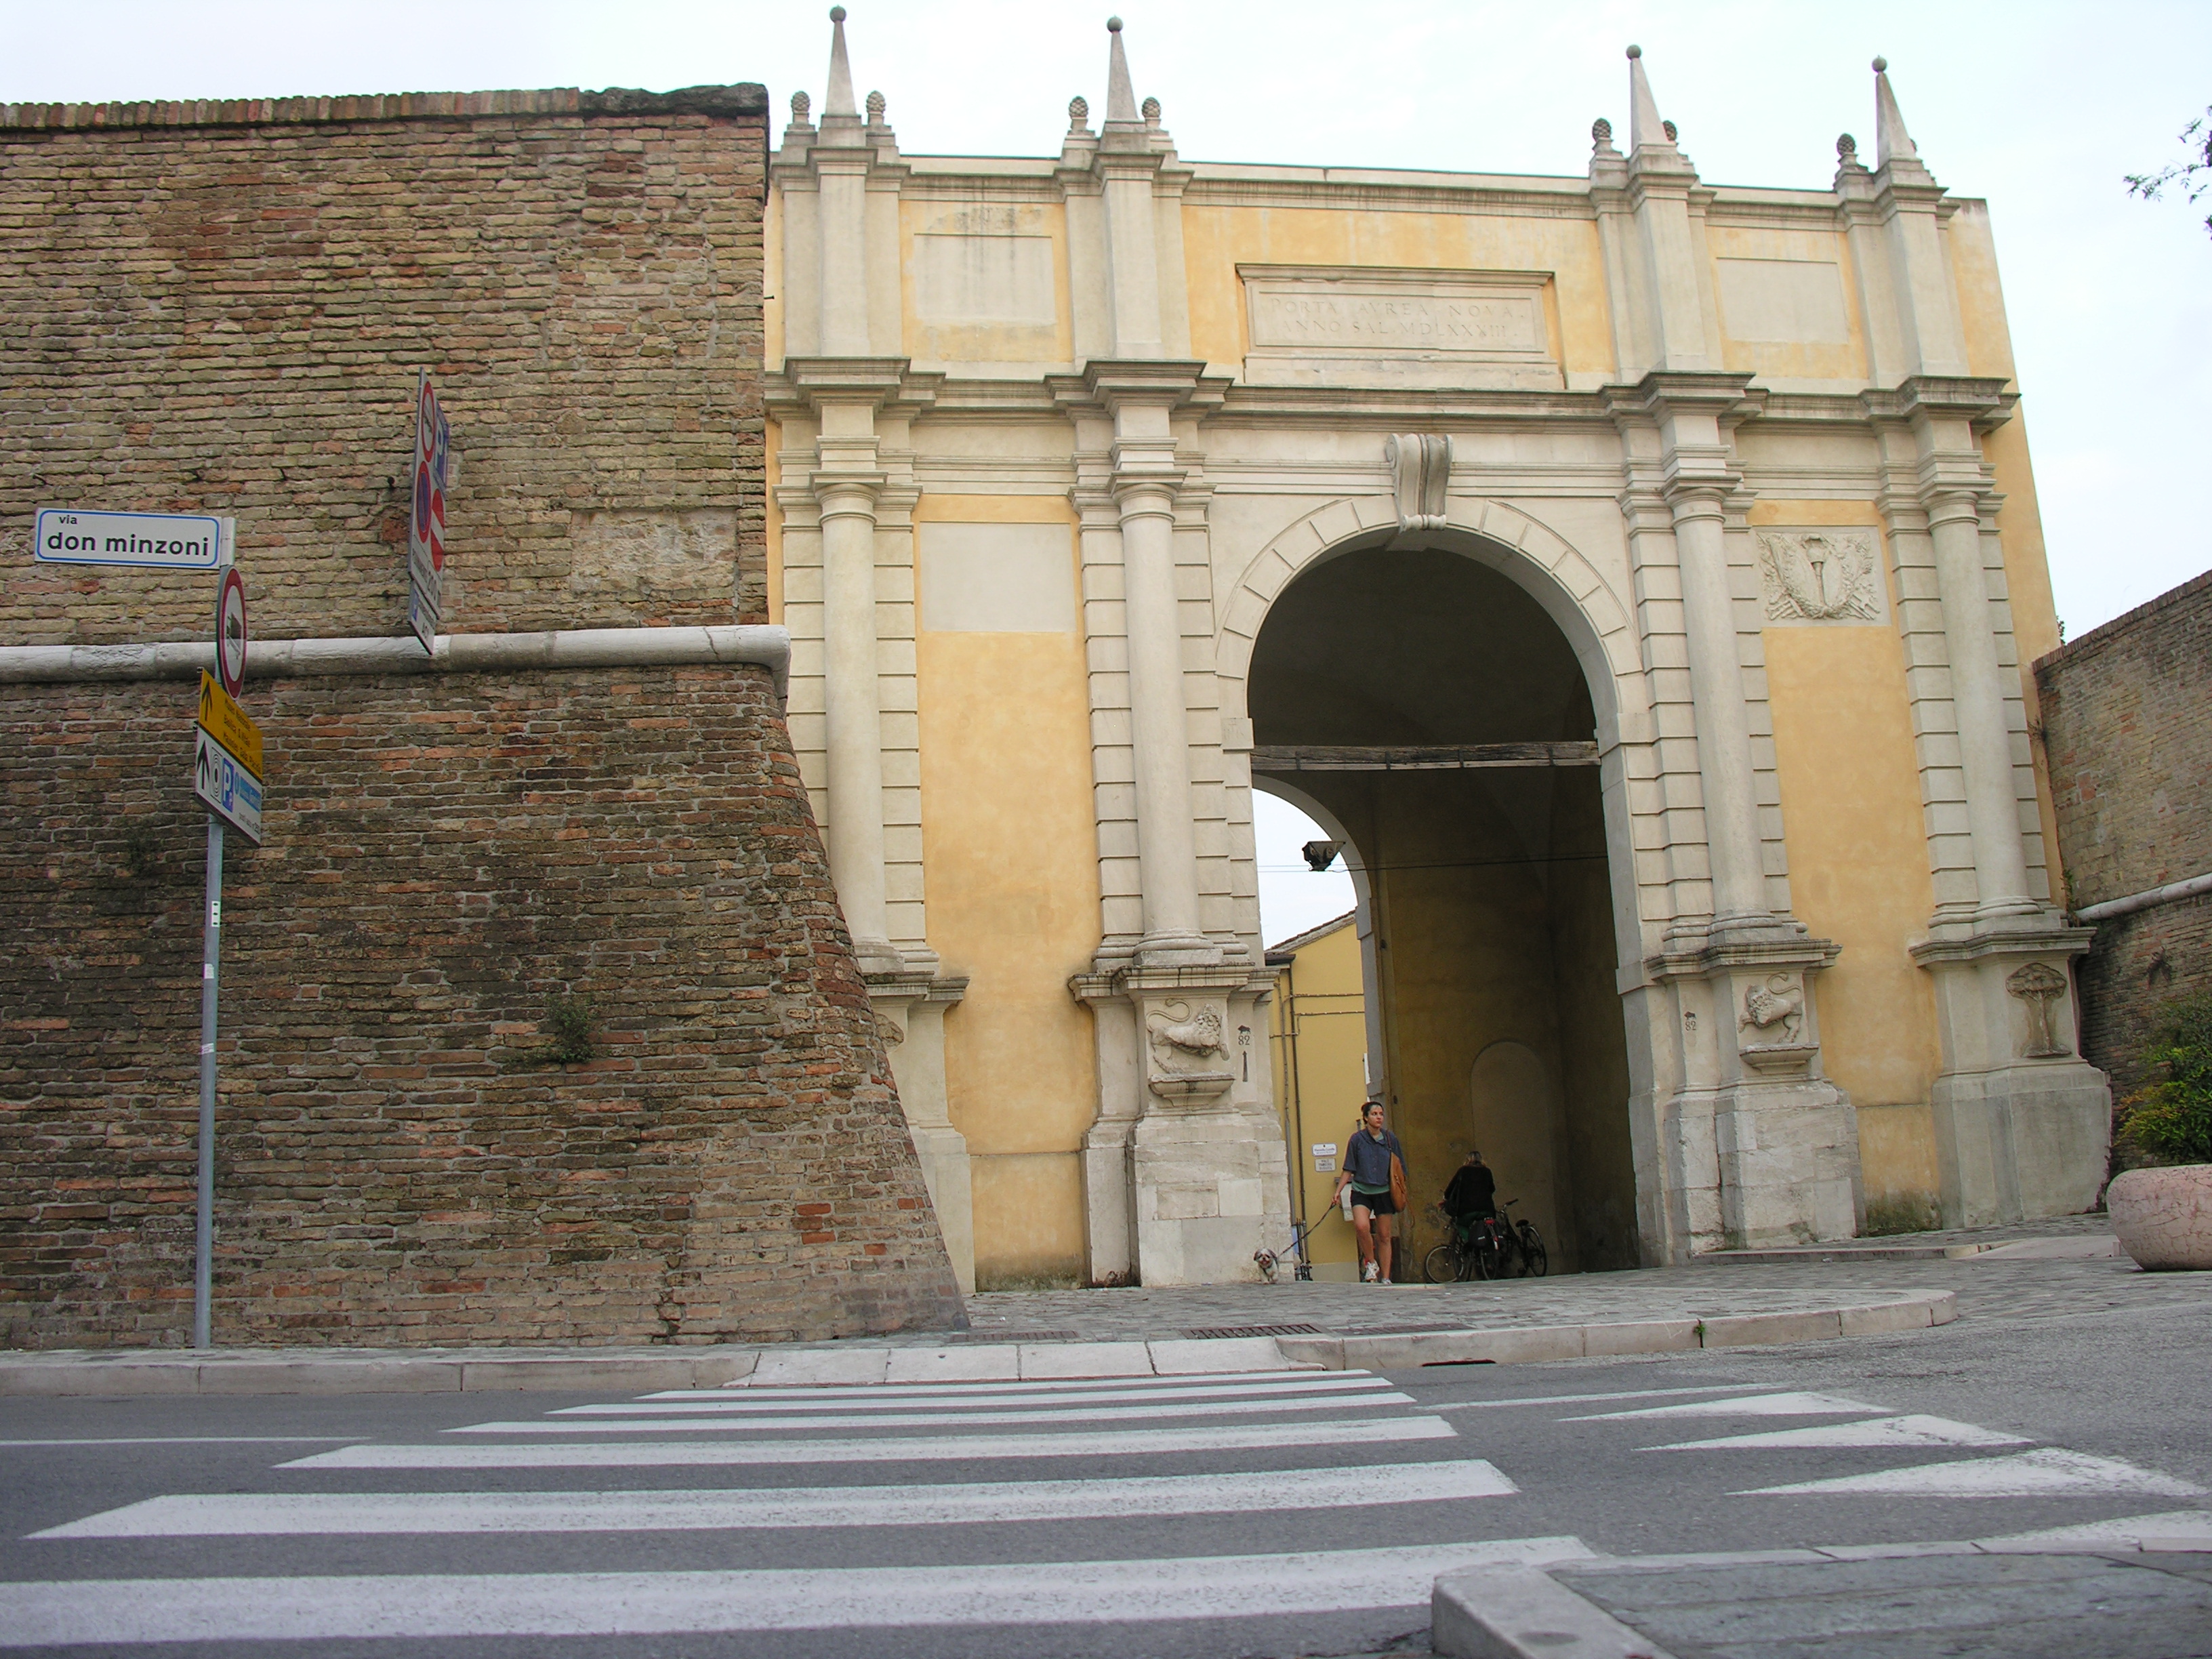 foto: https://upload.wikimedia.org/wikipedia/commons/2/20/Porta_adriana%2C_la_facciata_con_le_vecchia_mura.JPG